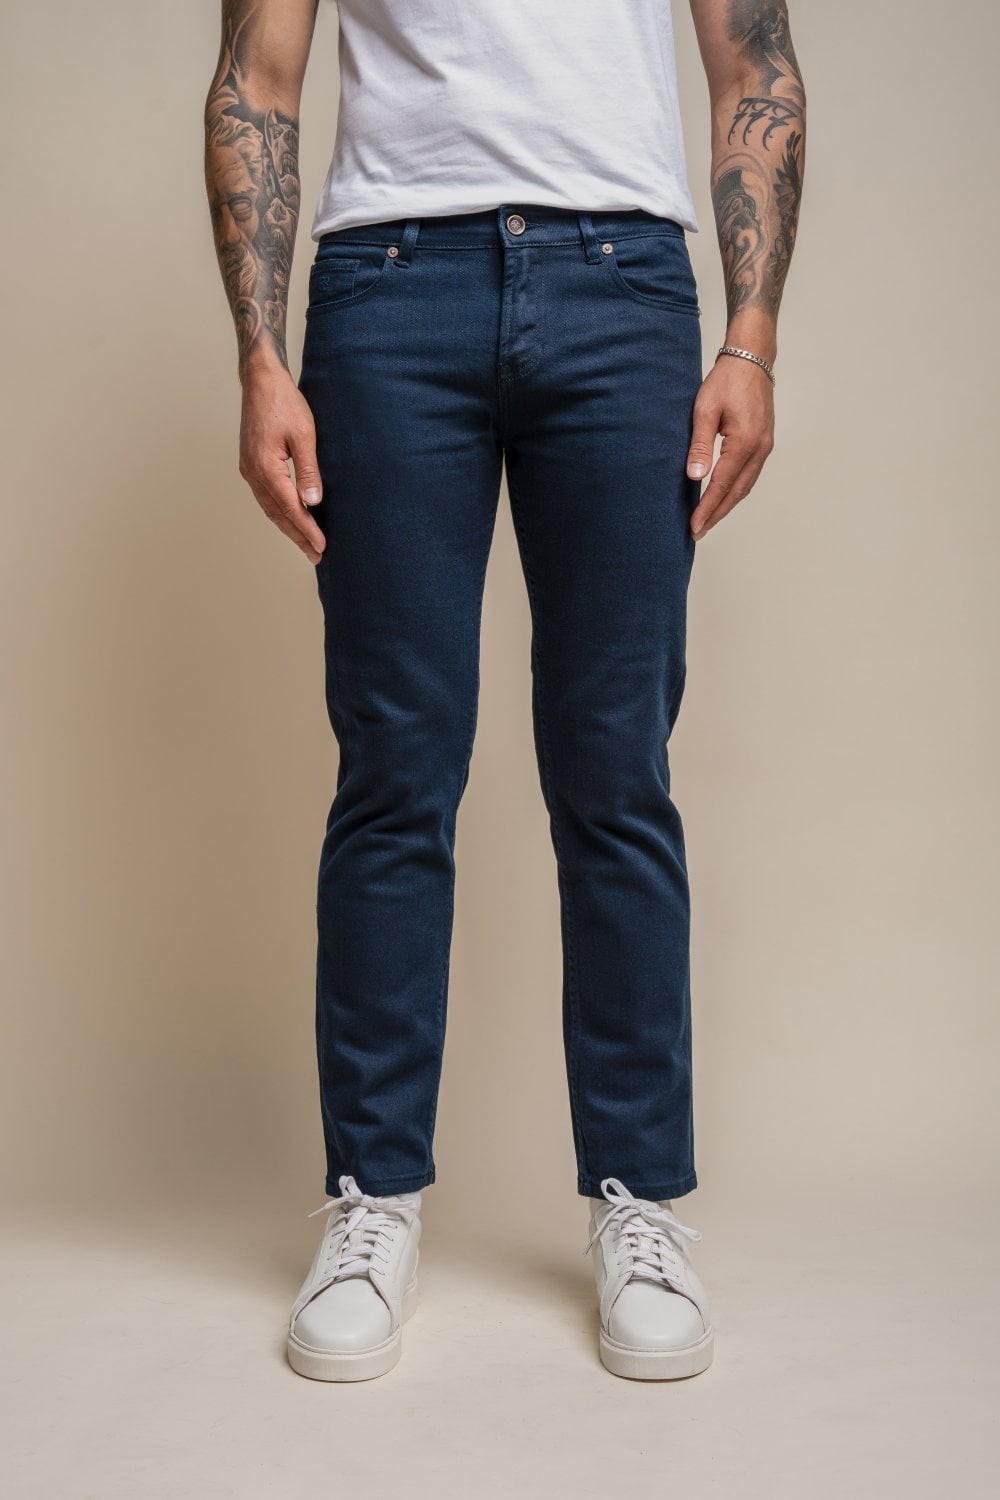 Herren Baumwolle Slim-Fit Stretch Denim Jeans - MILANO - Stahlgrau